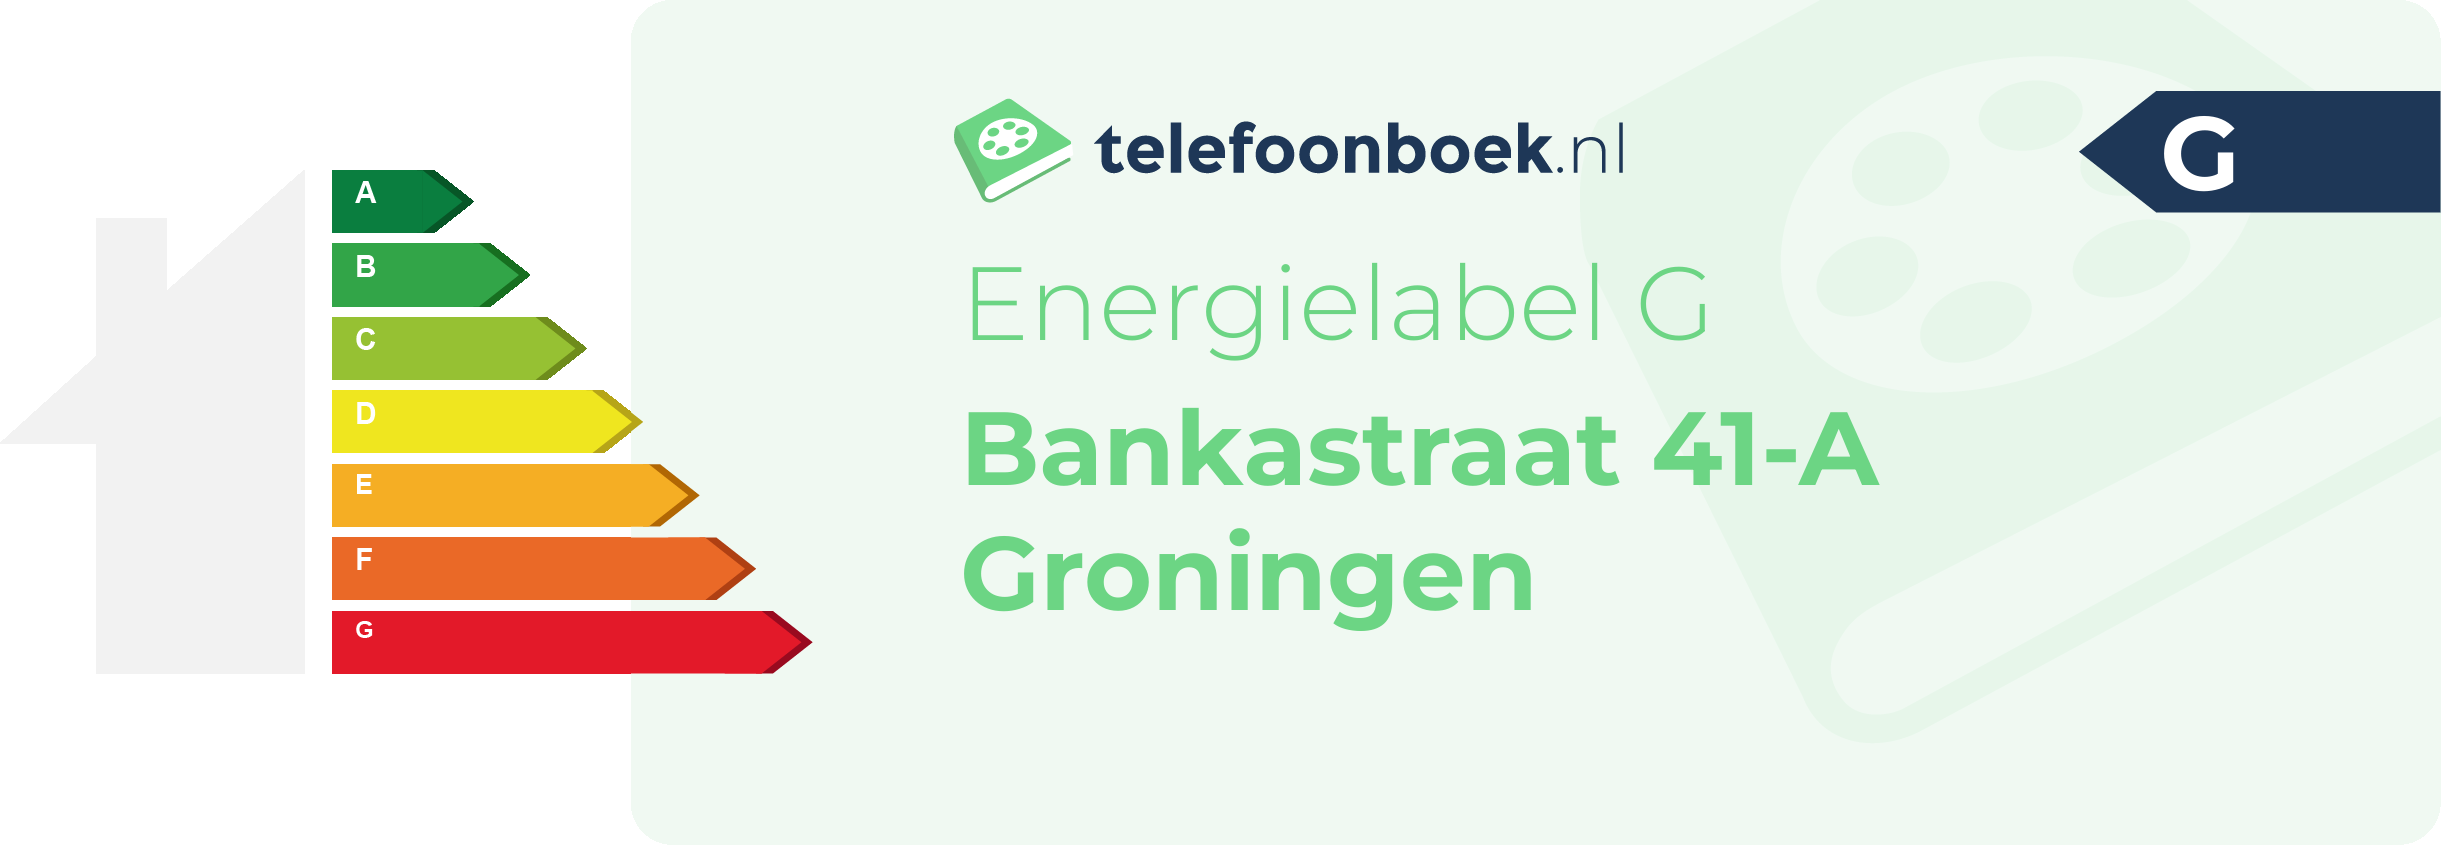 Energielabel Bankastraat 41-A Groningen